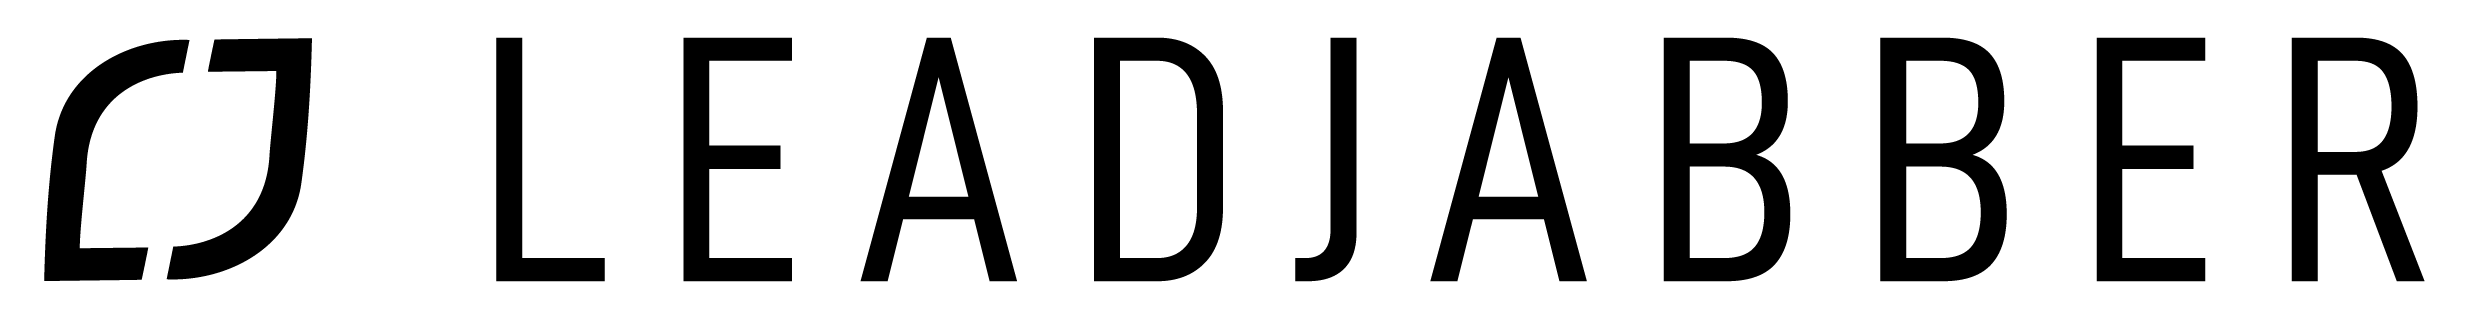 LeadJabber logo